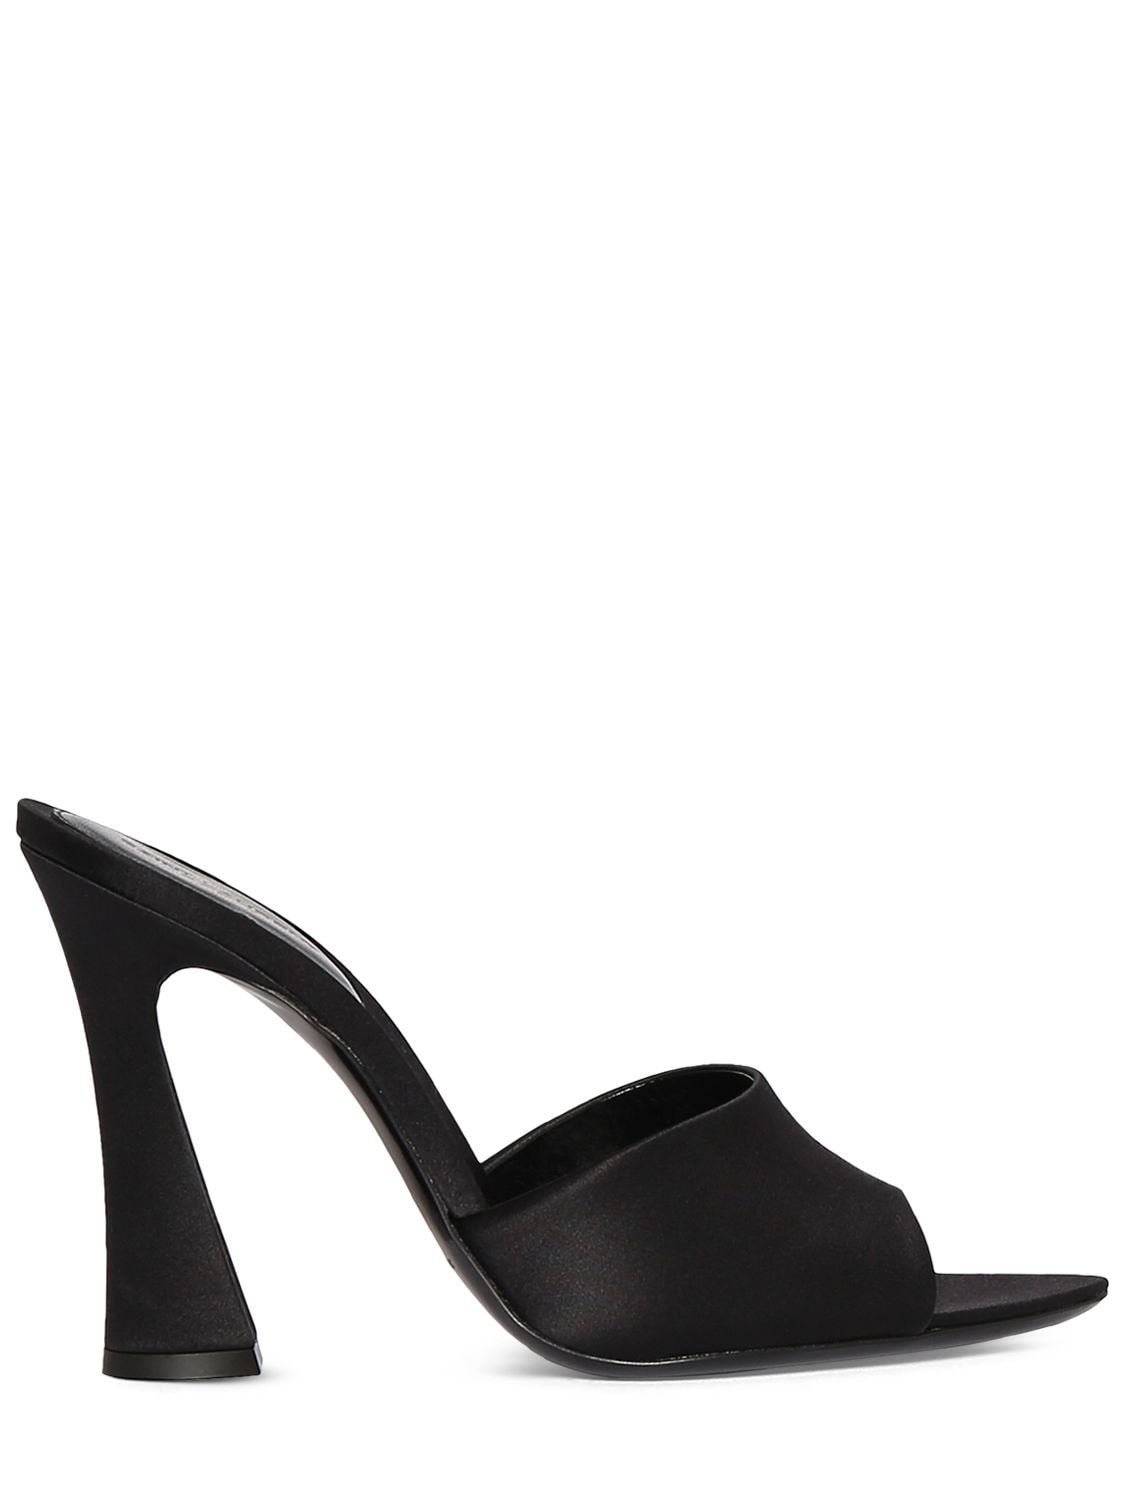 Saint Laurent 105mm Suite Lea Satin Mule Sandals In Black